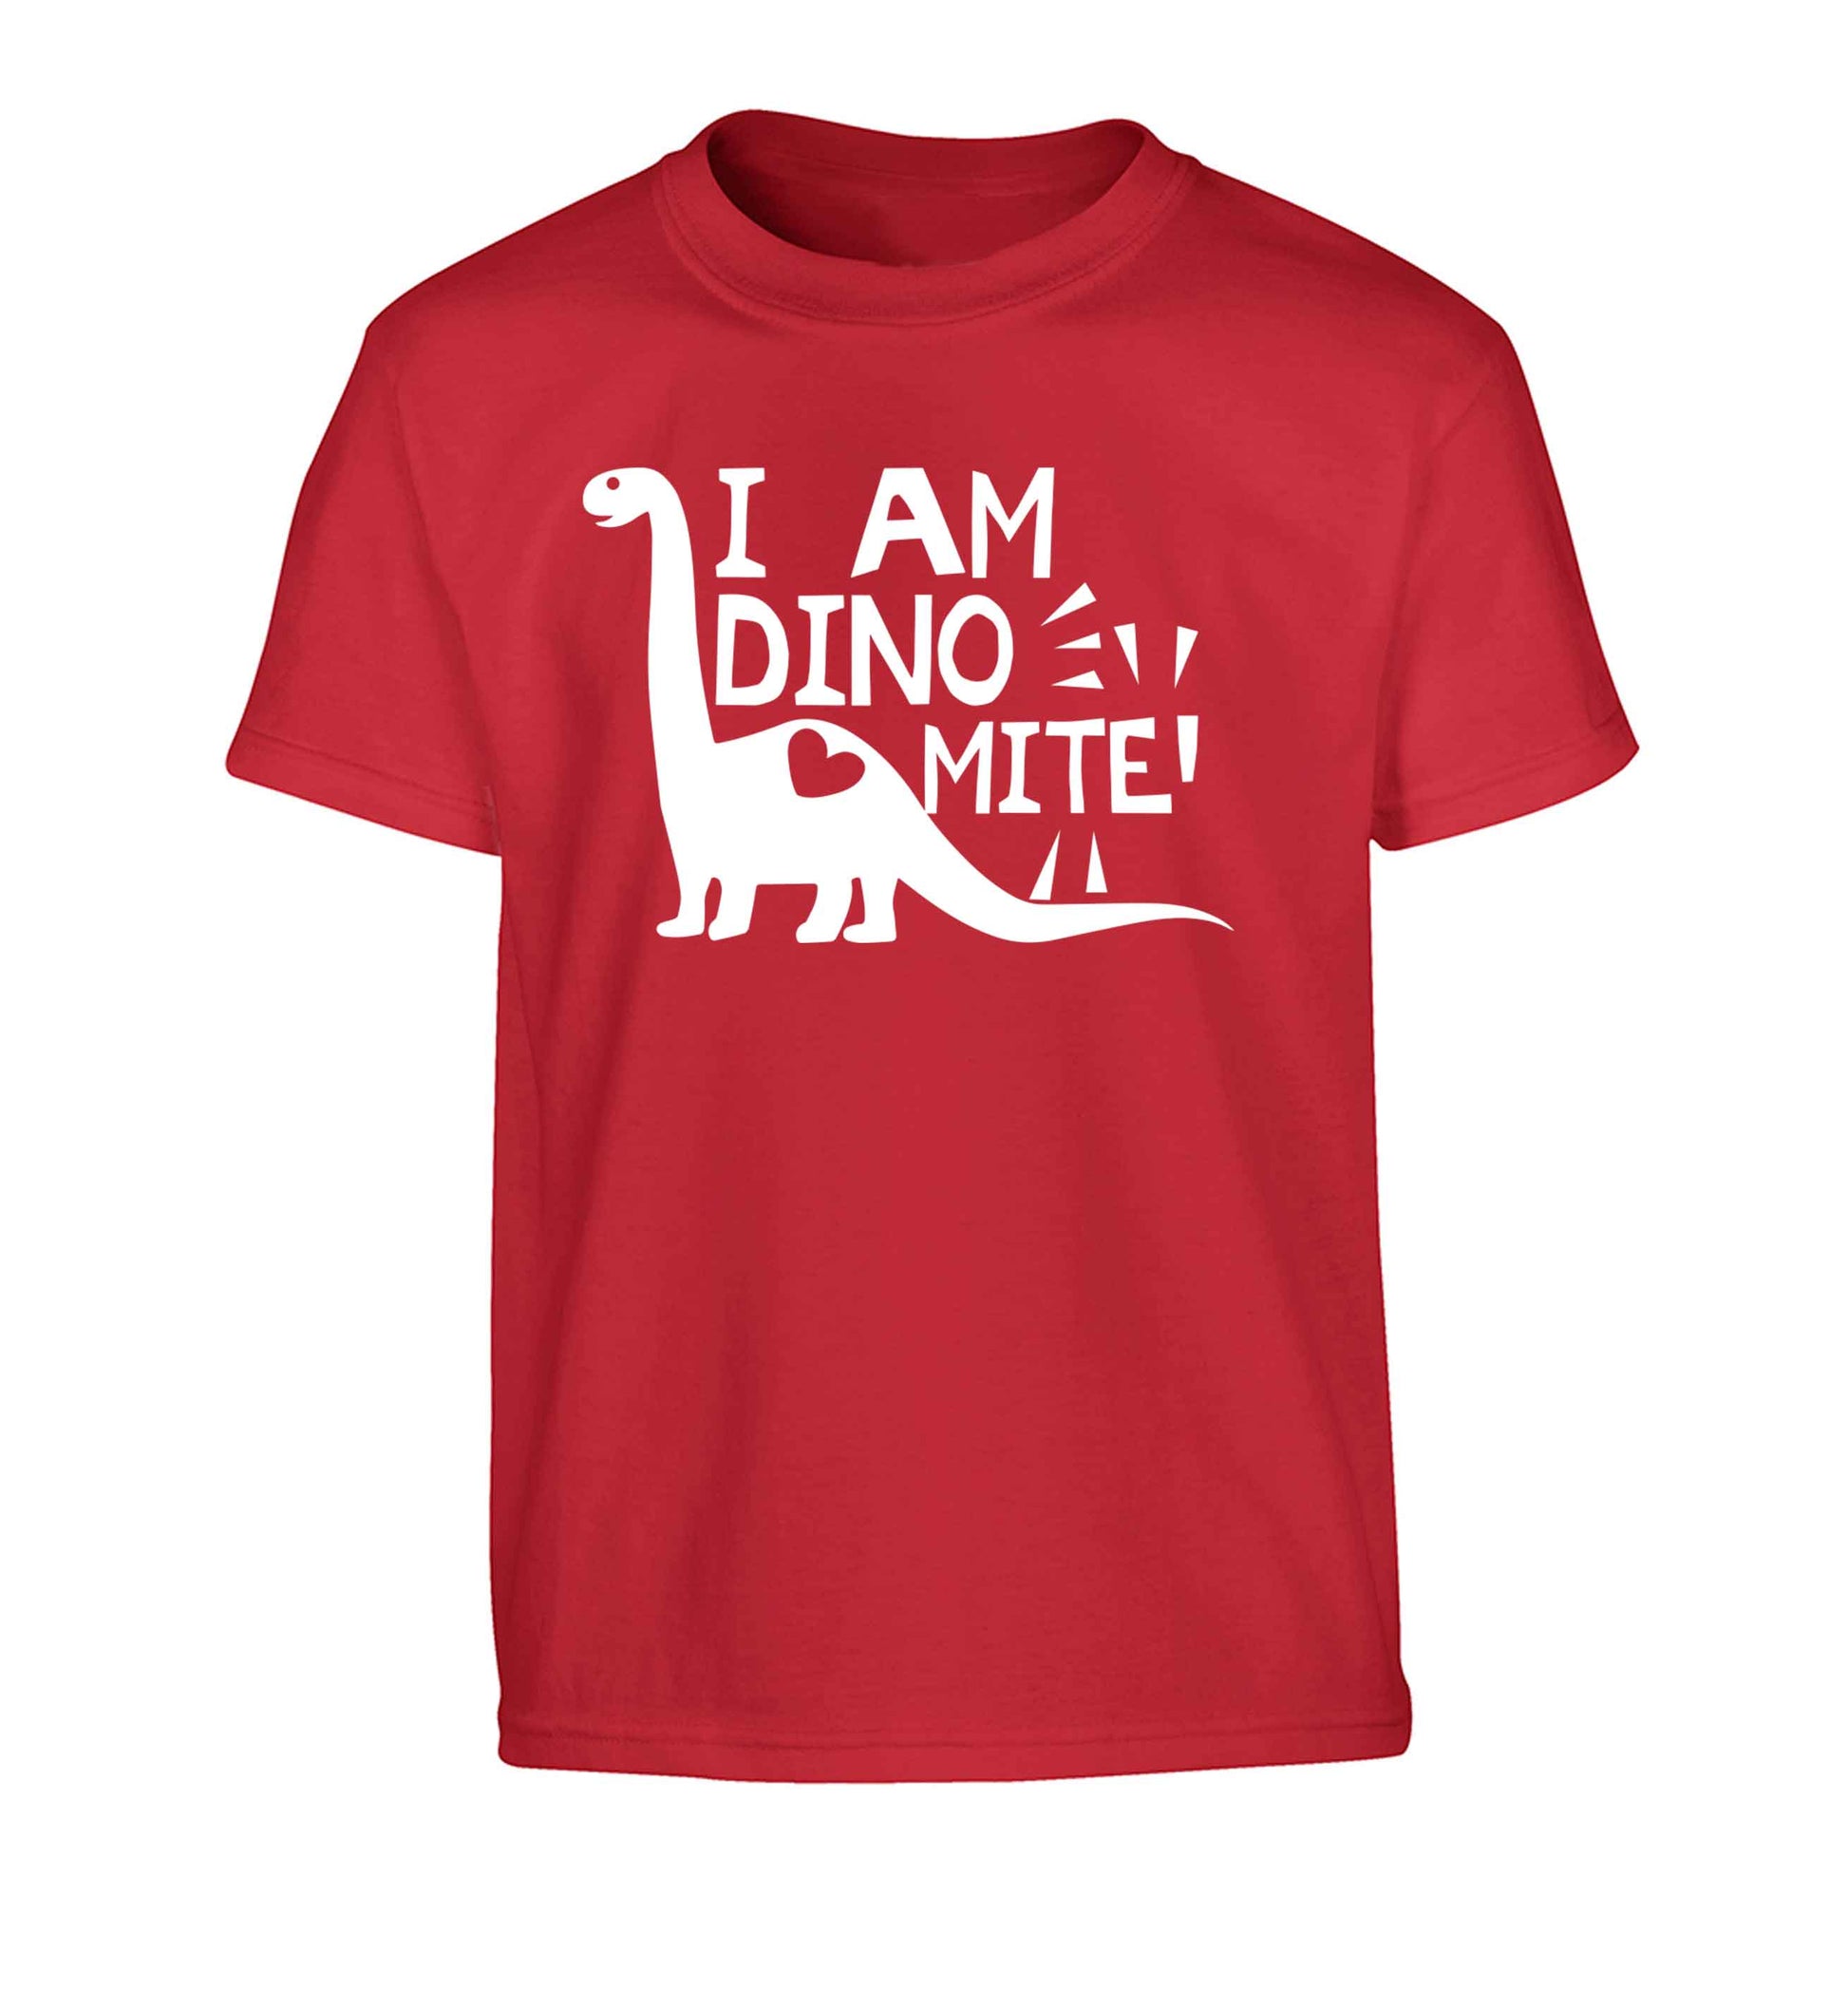 I am dinomite! Children's red Tshirt 12-13 Years